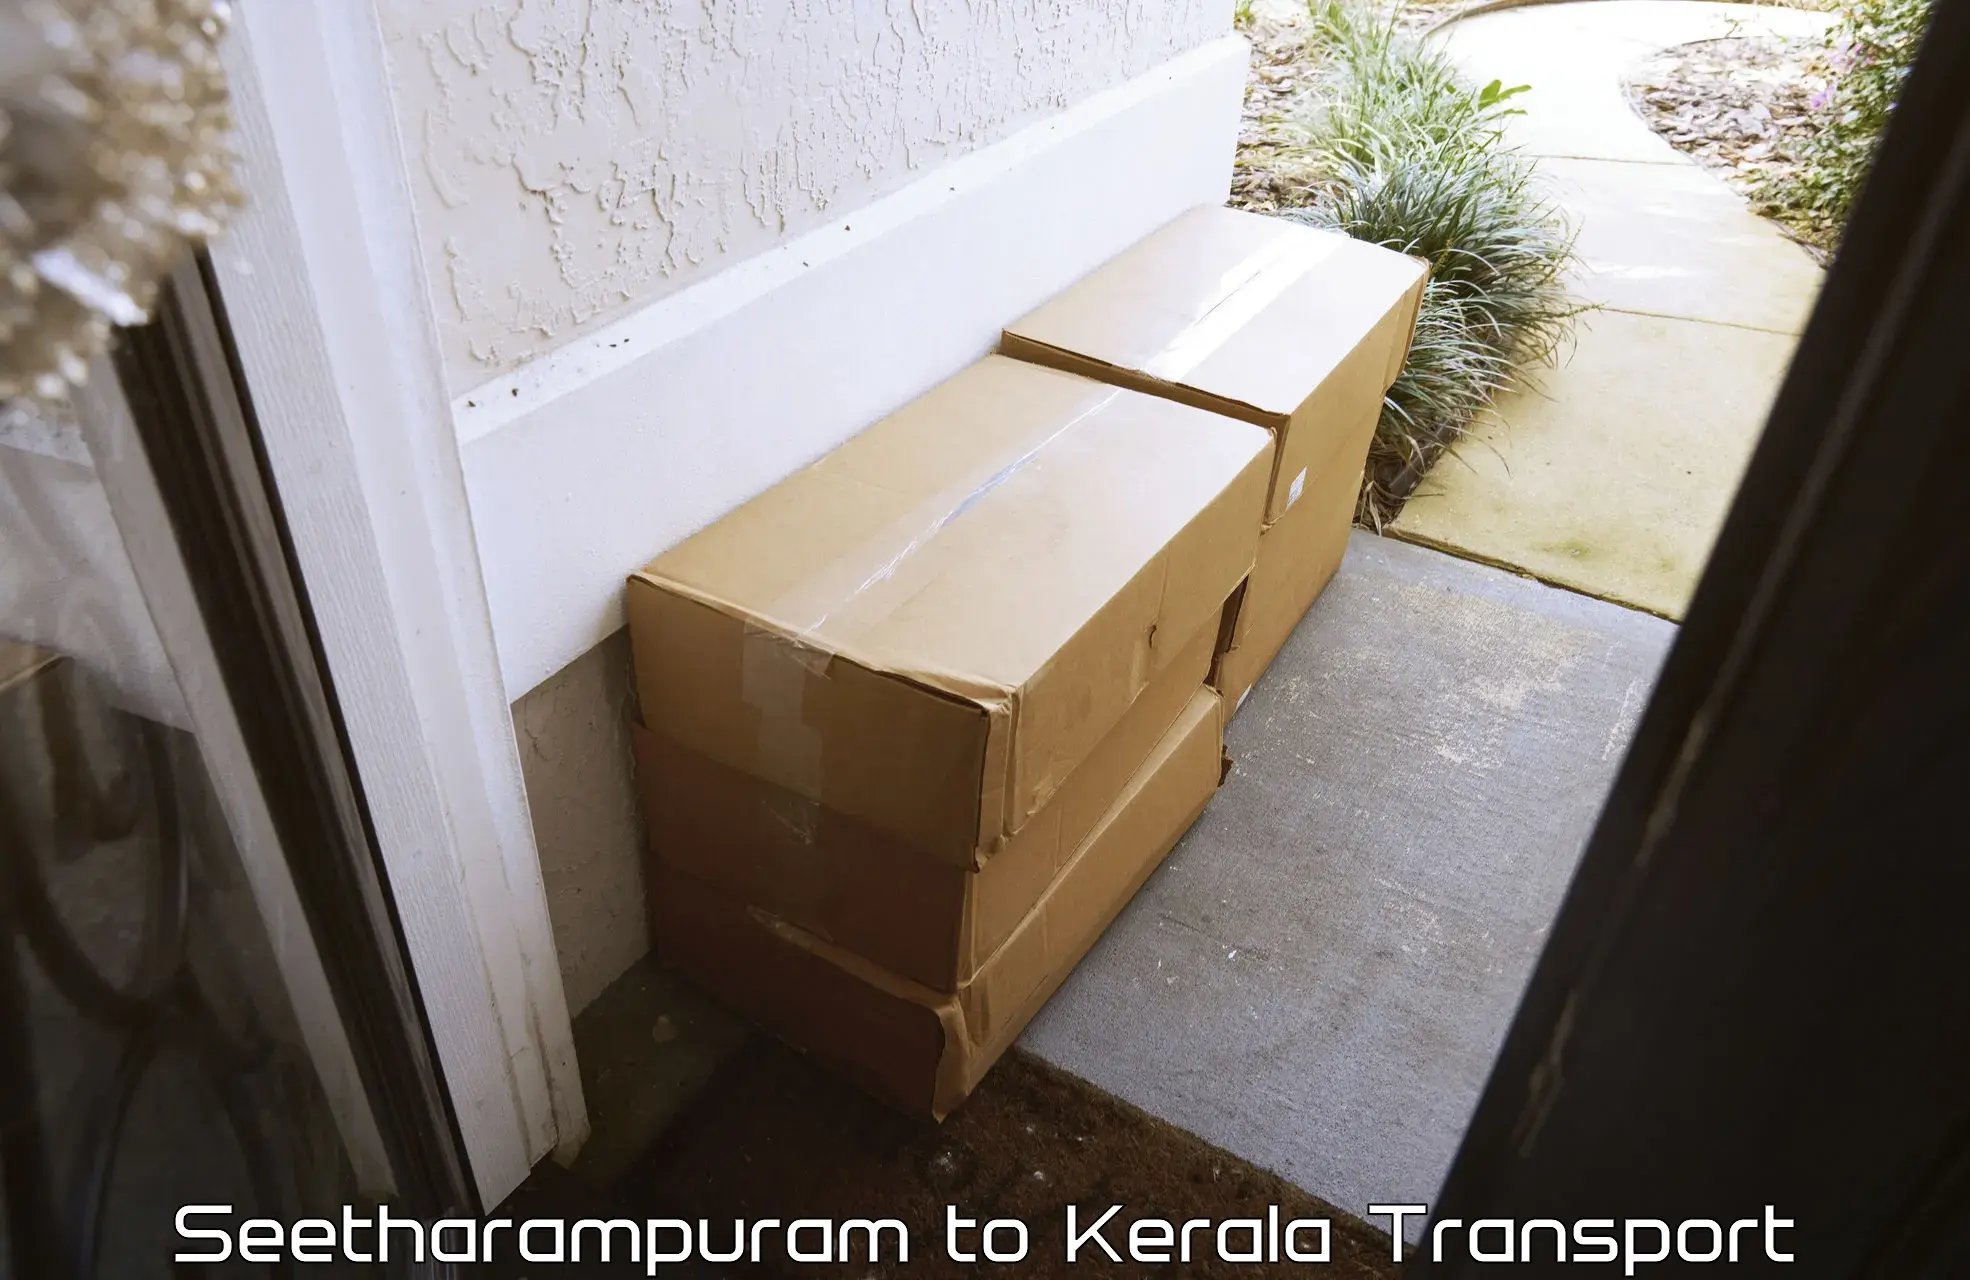 Door to door transport services Seetharampuram to Kollam